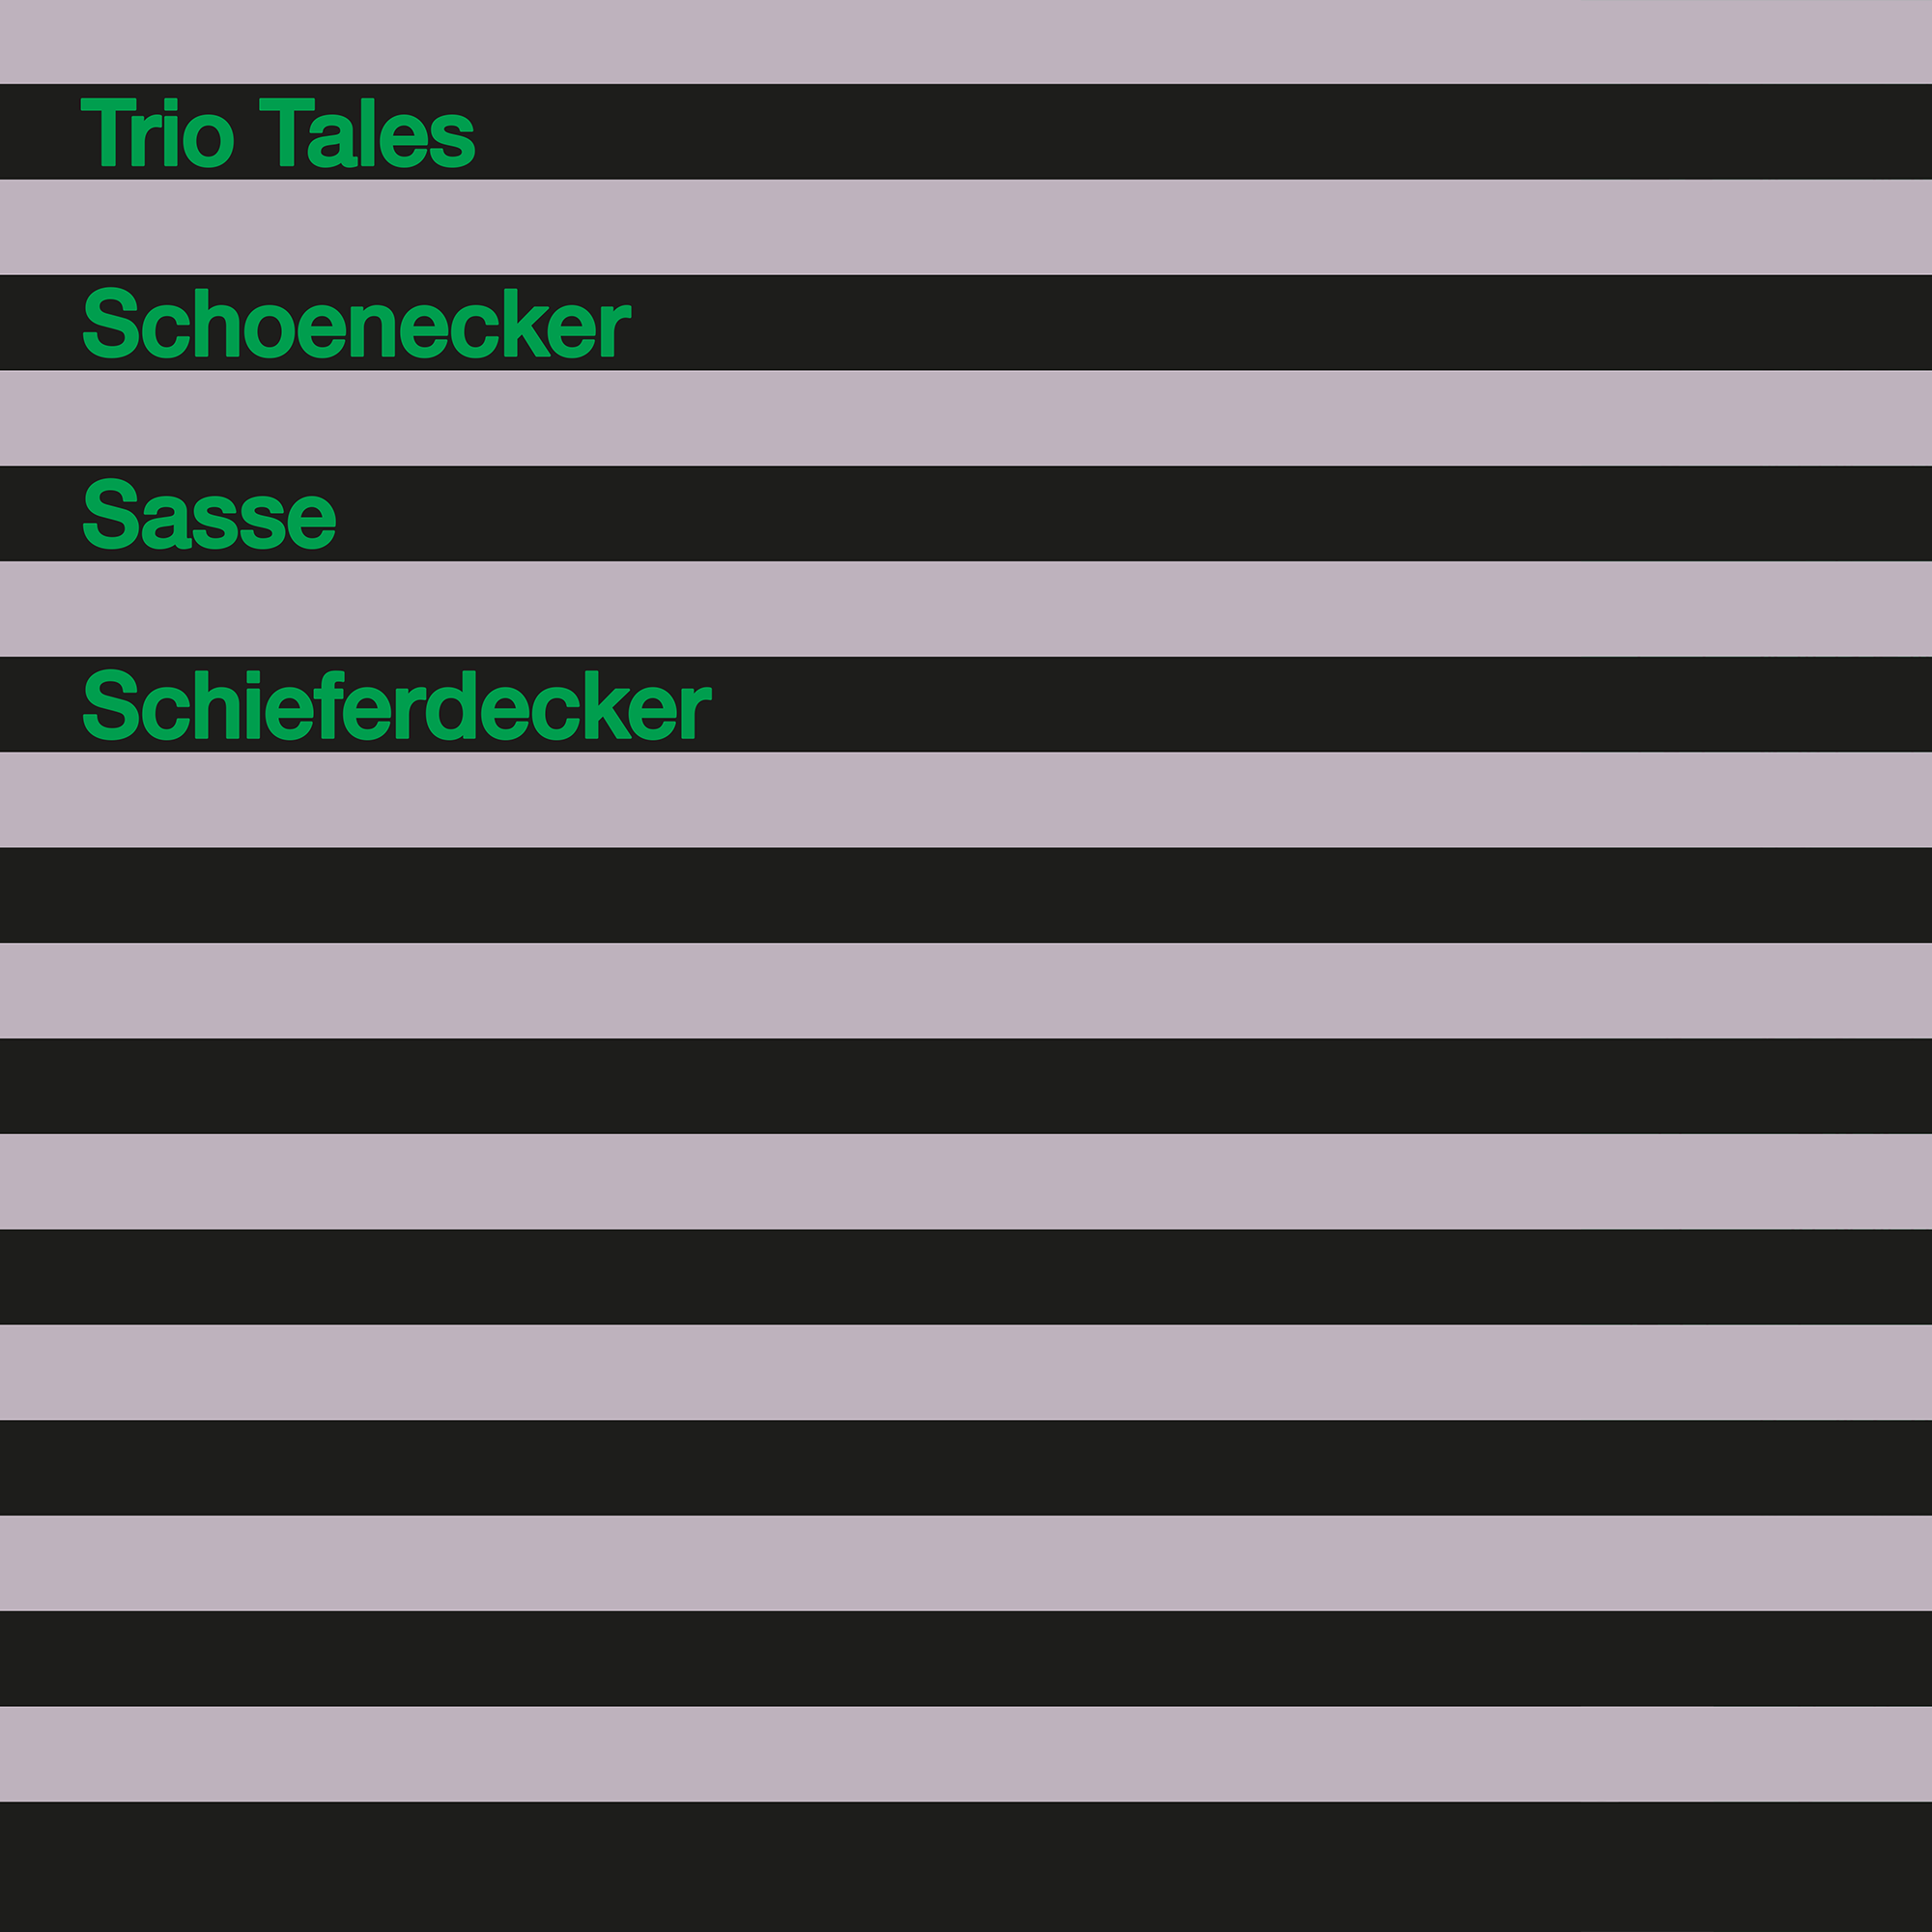 JJ51037-Schoenecker-Sasse-Schieferdecker-Trio-Tales-Cover-f